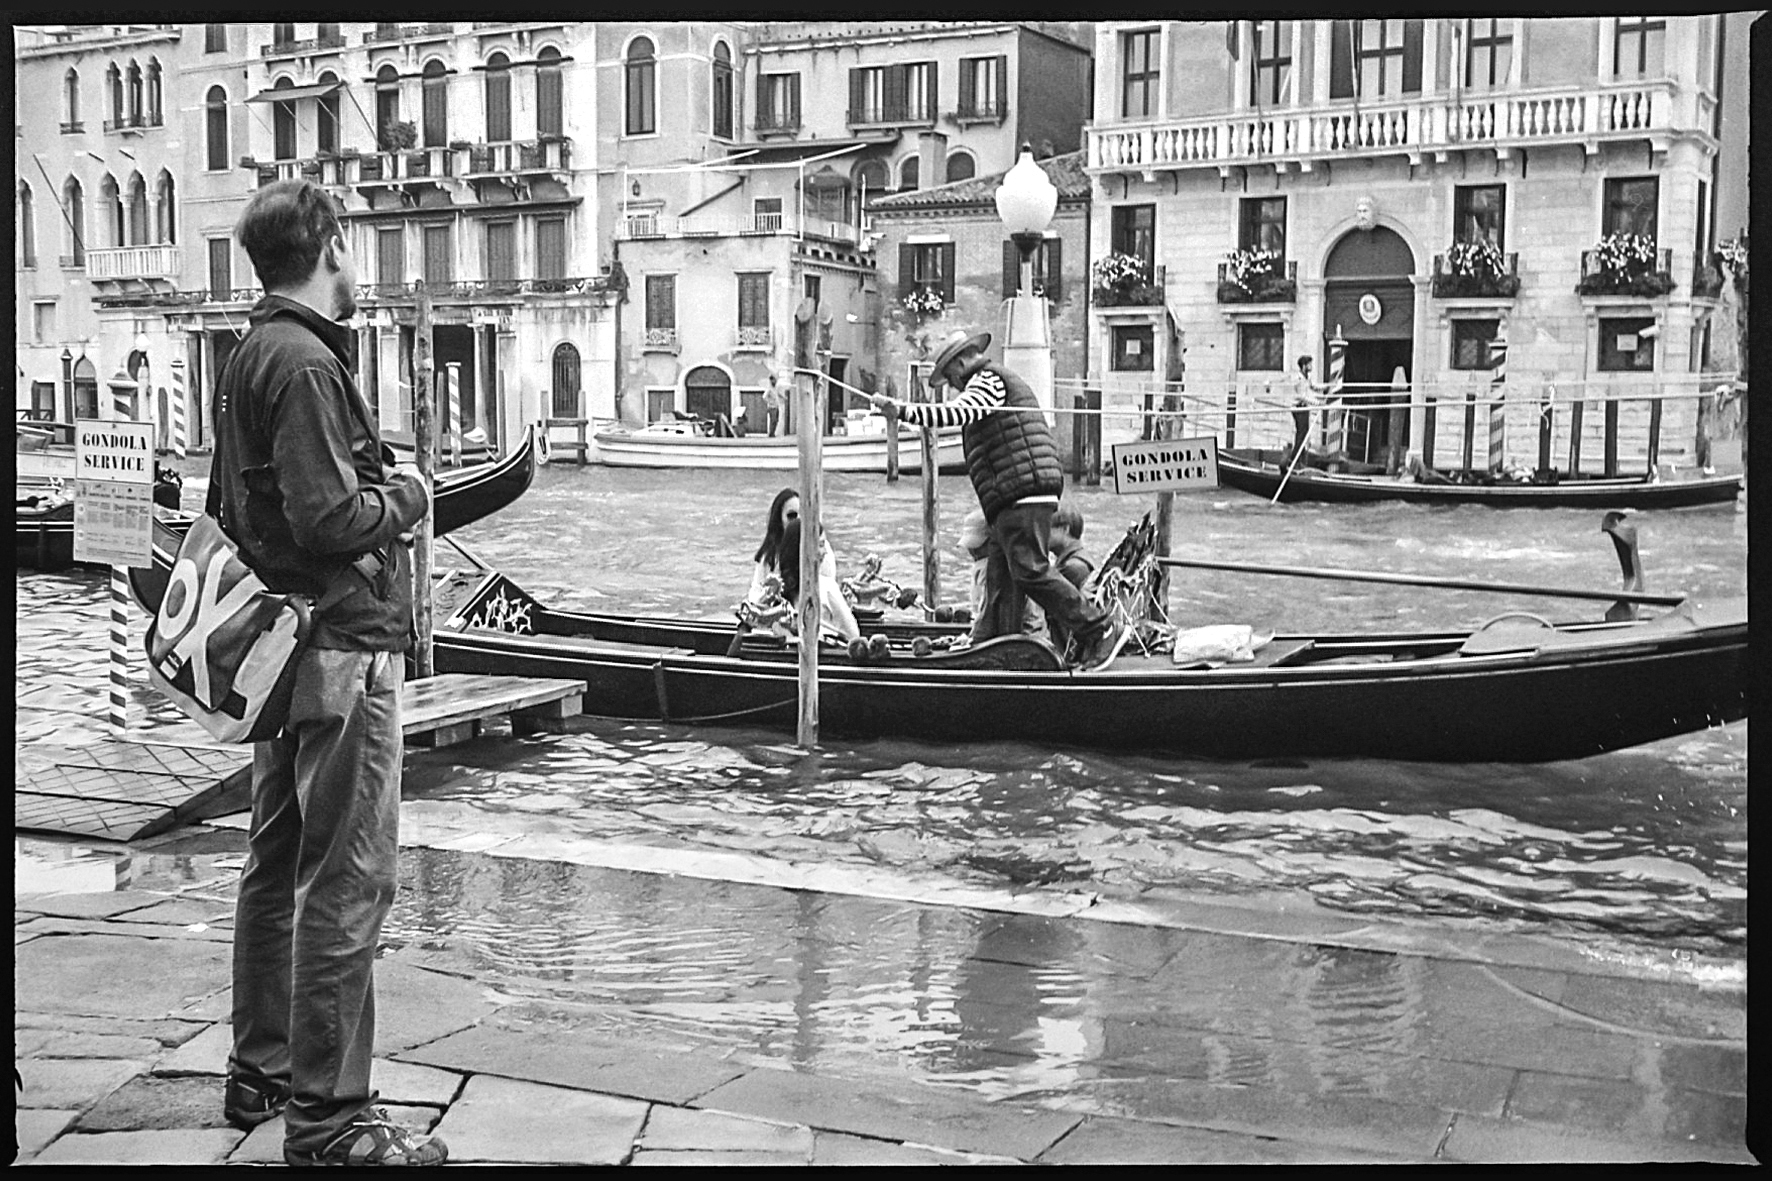 Gondola service, Venezia...